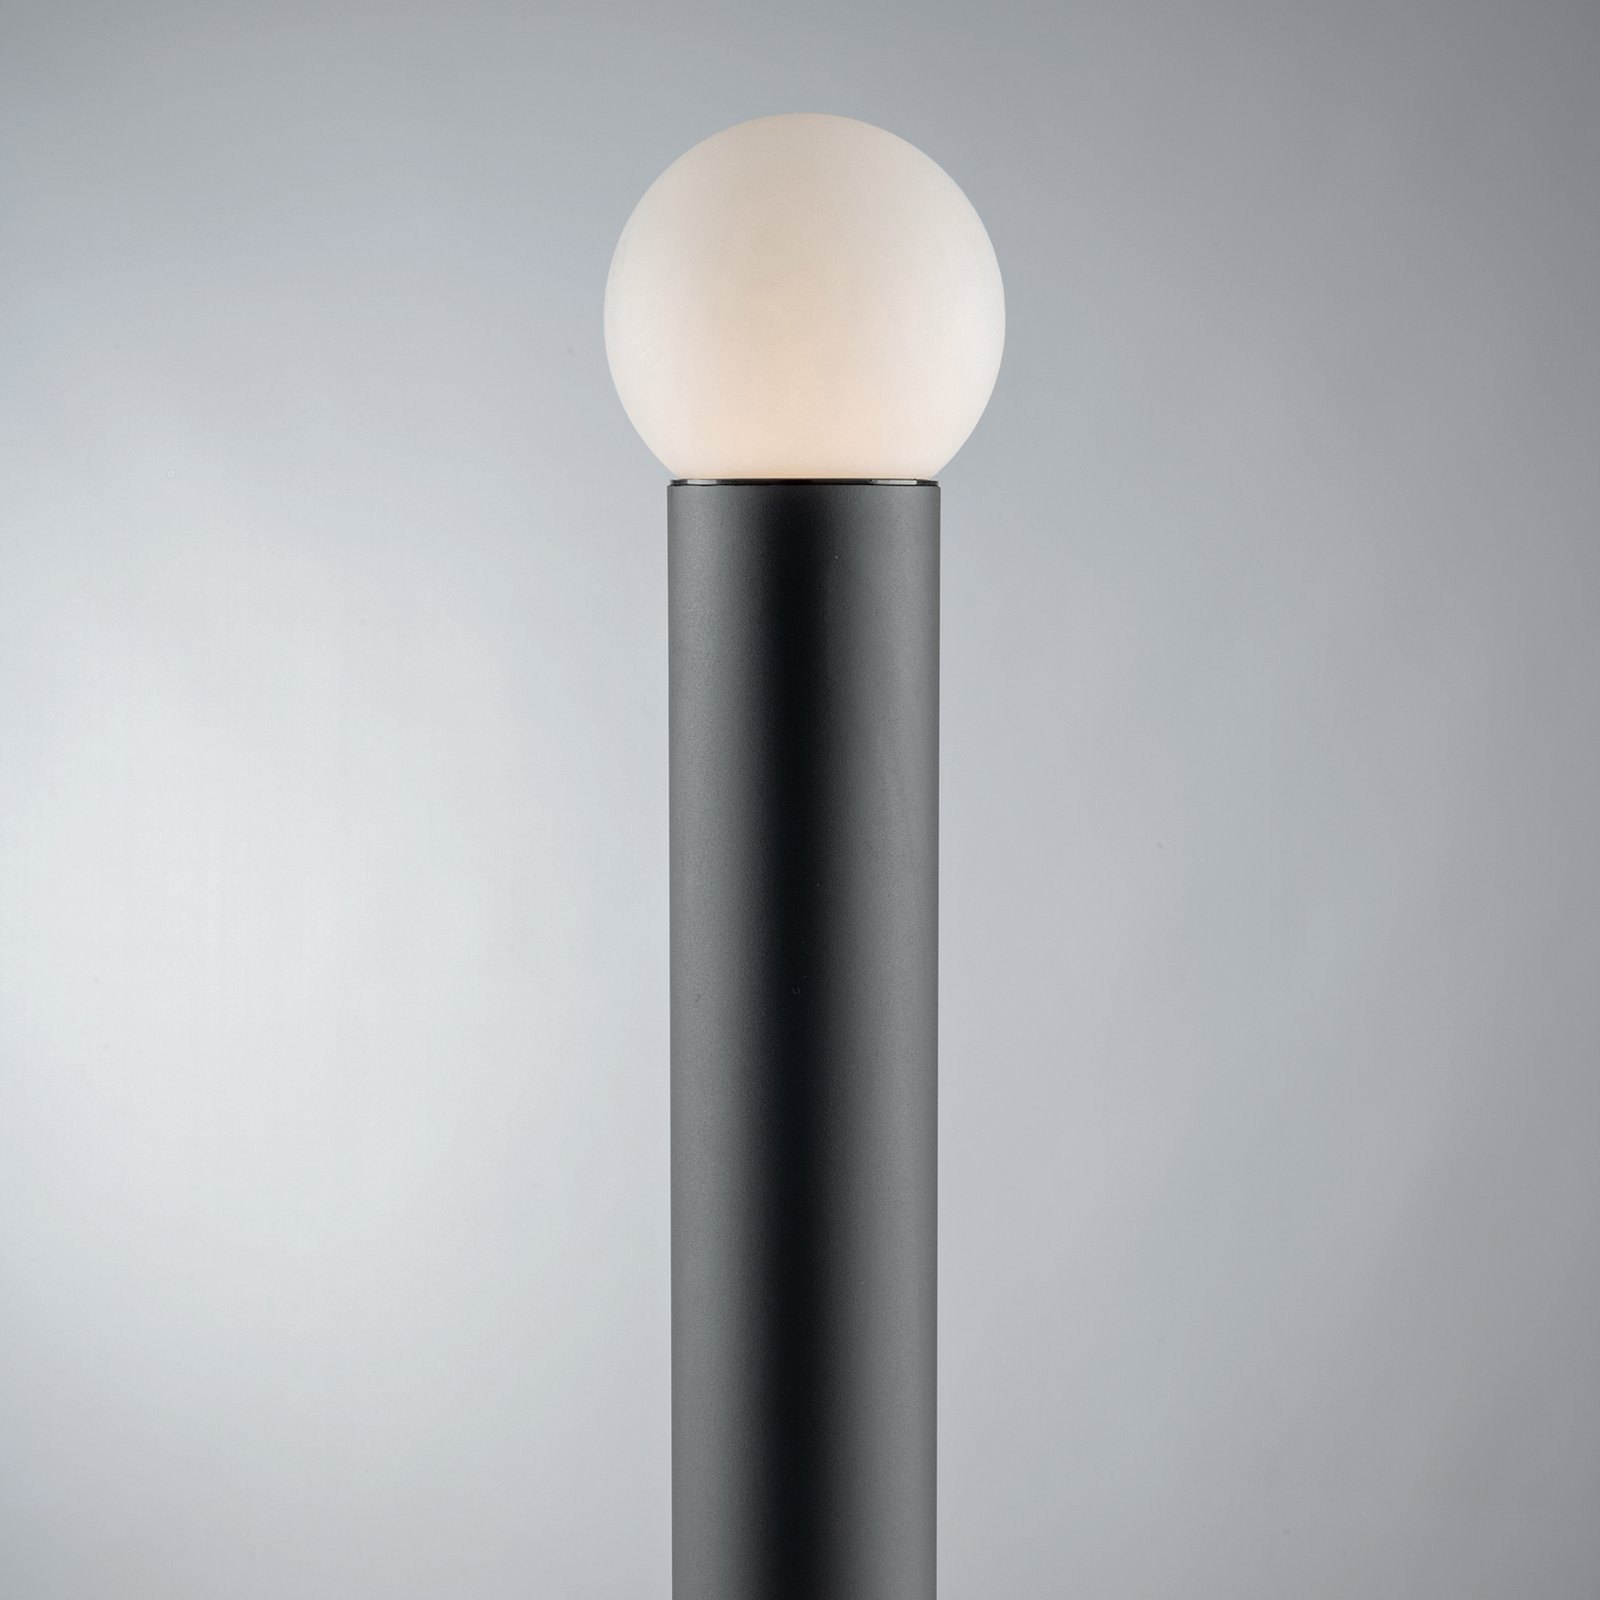 Skittle útvilágítás gömb alakú ernyővel, magasság 65 cm